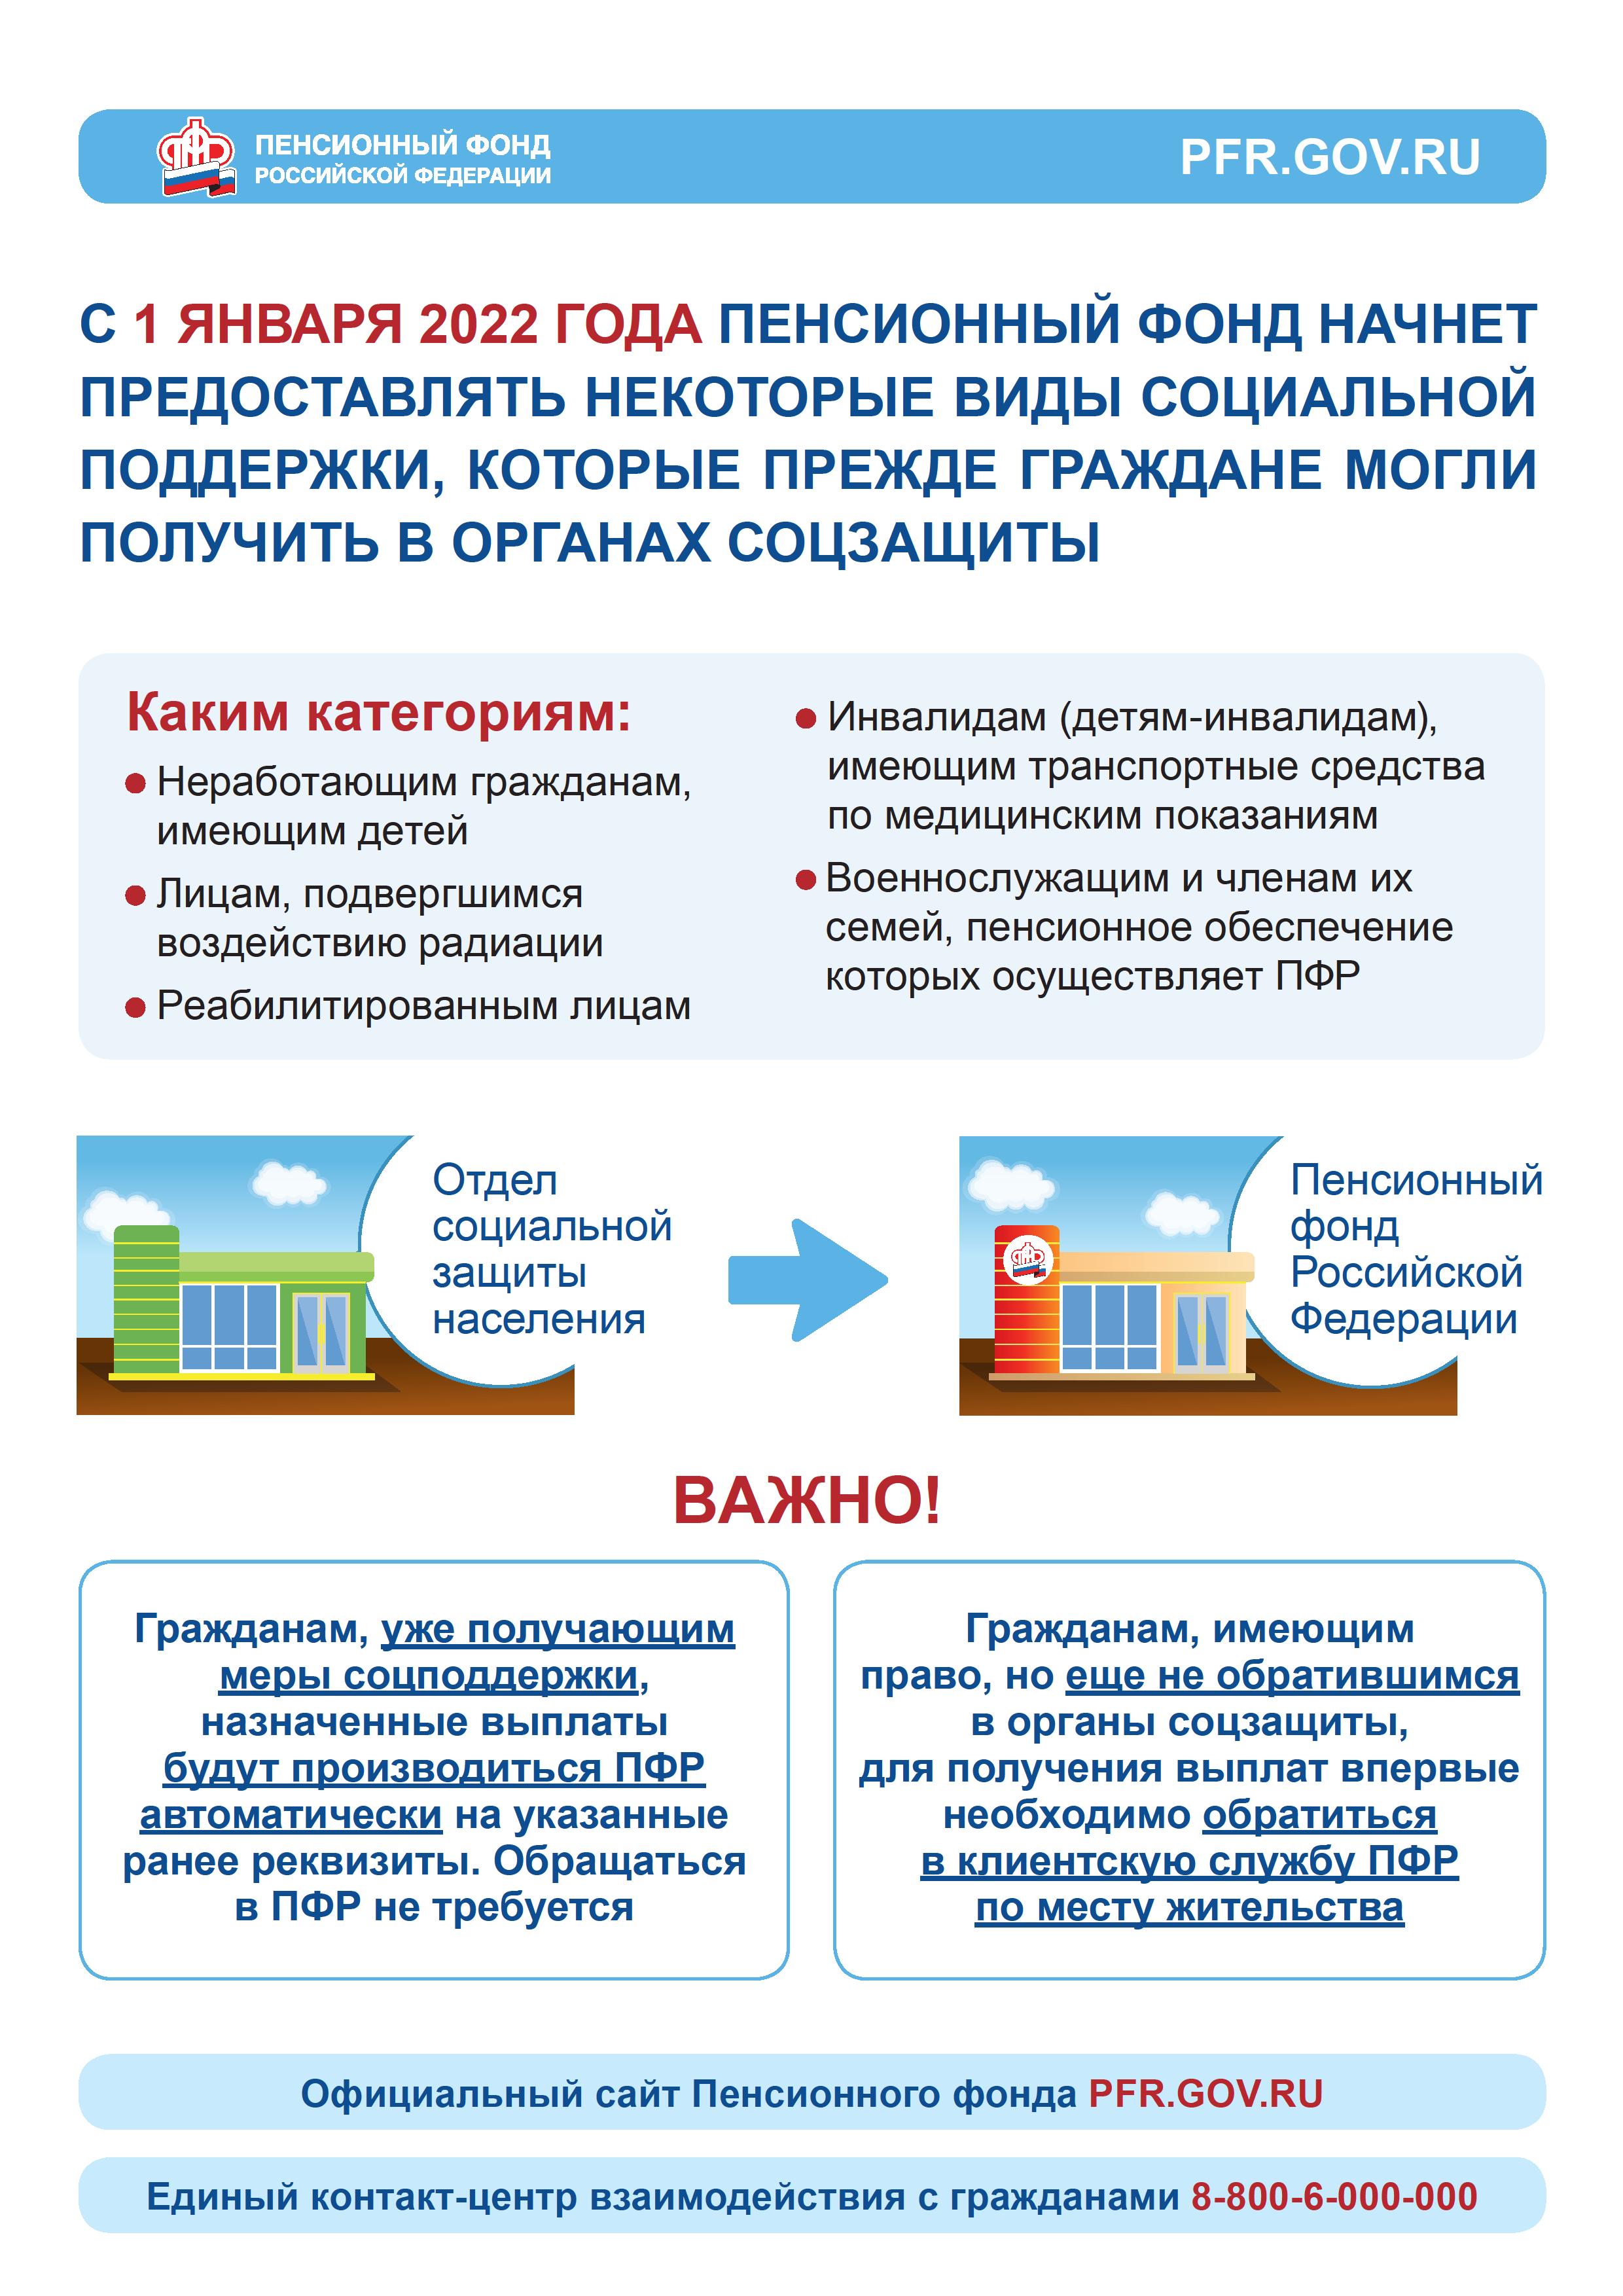 Перевод пенсии на детей пенсионеров в России правила и механизмы перехода